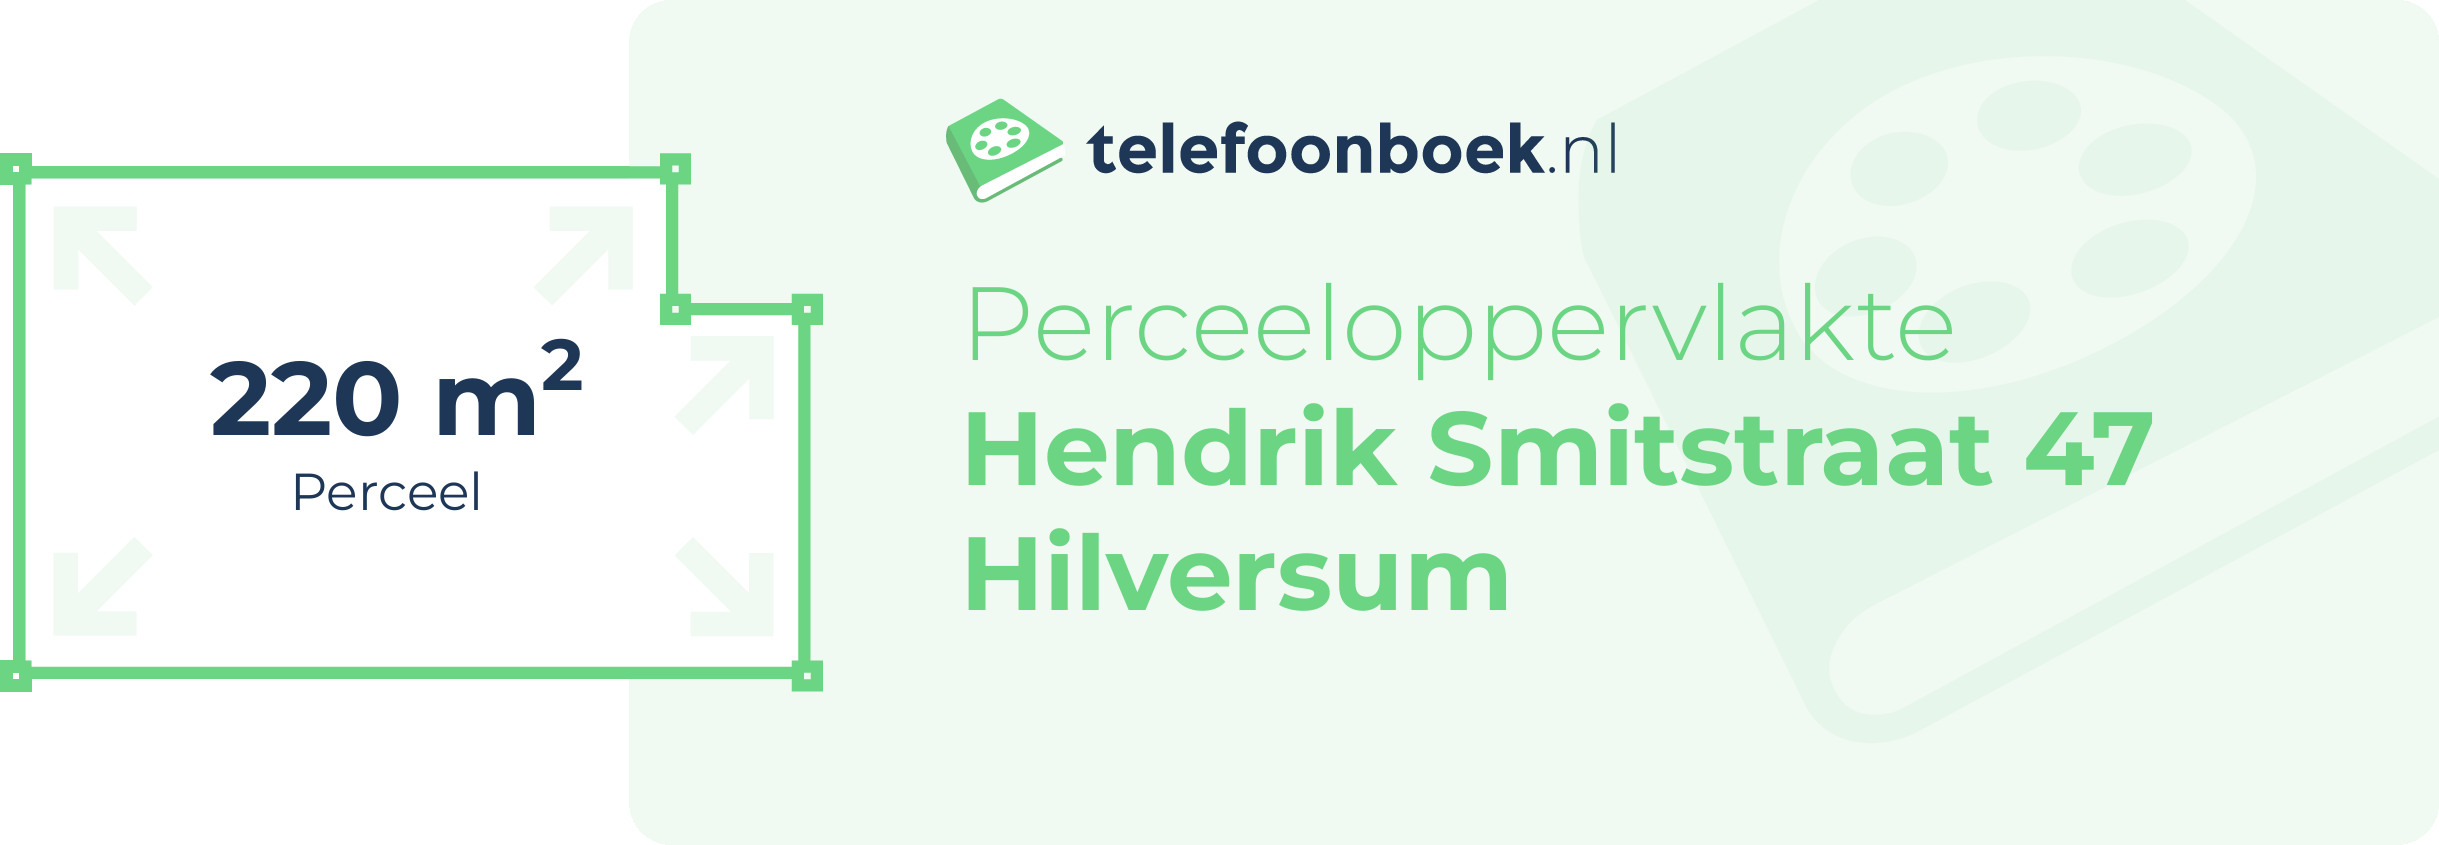 Perceeloppervlakte Hendrik Smitstraat 47 Hilversum